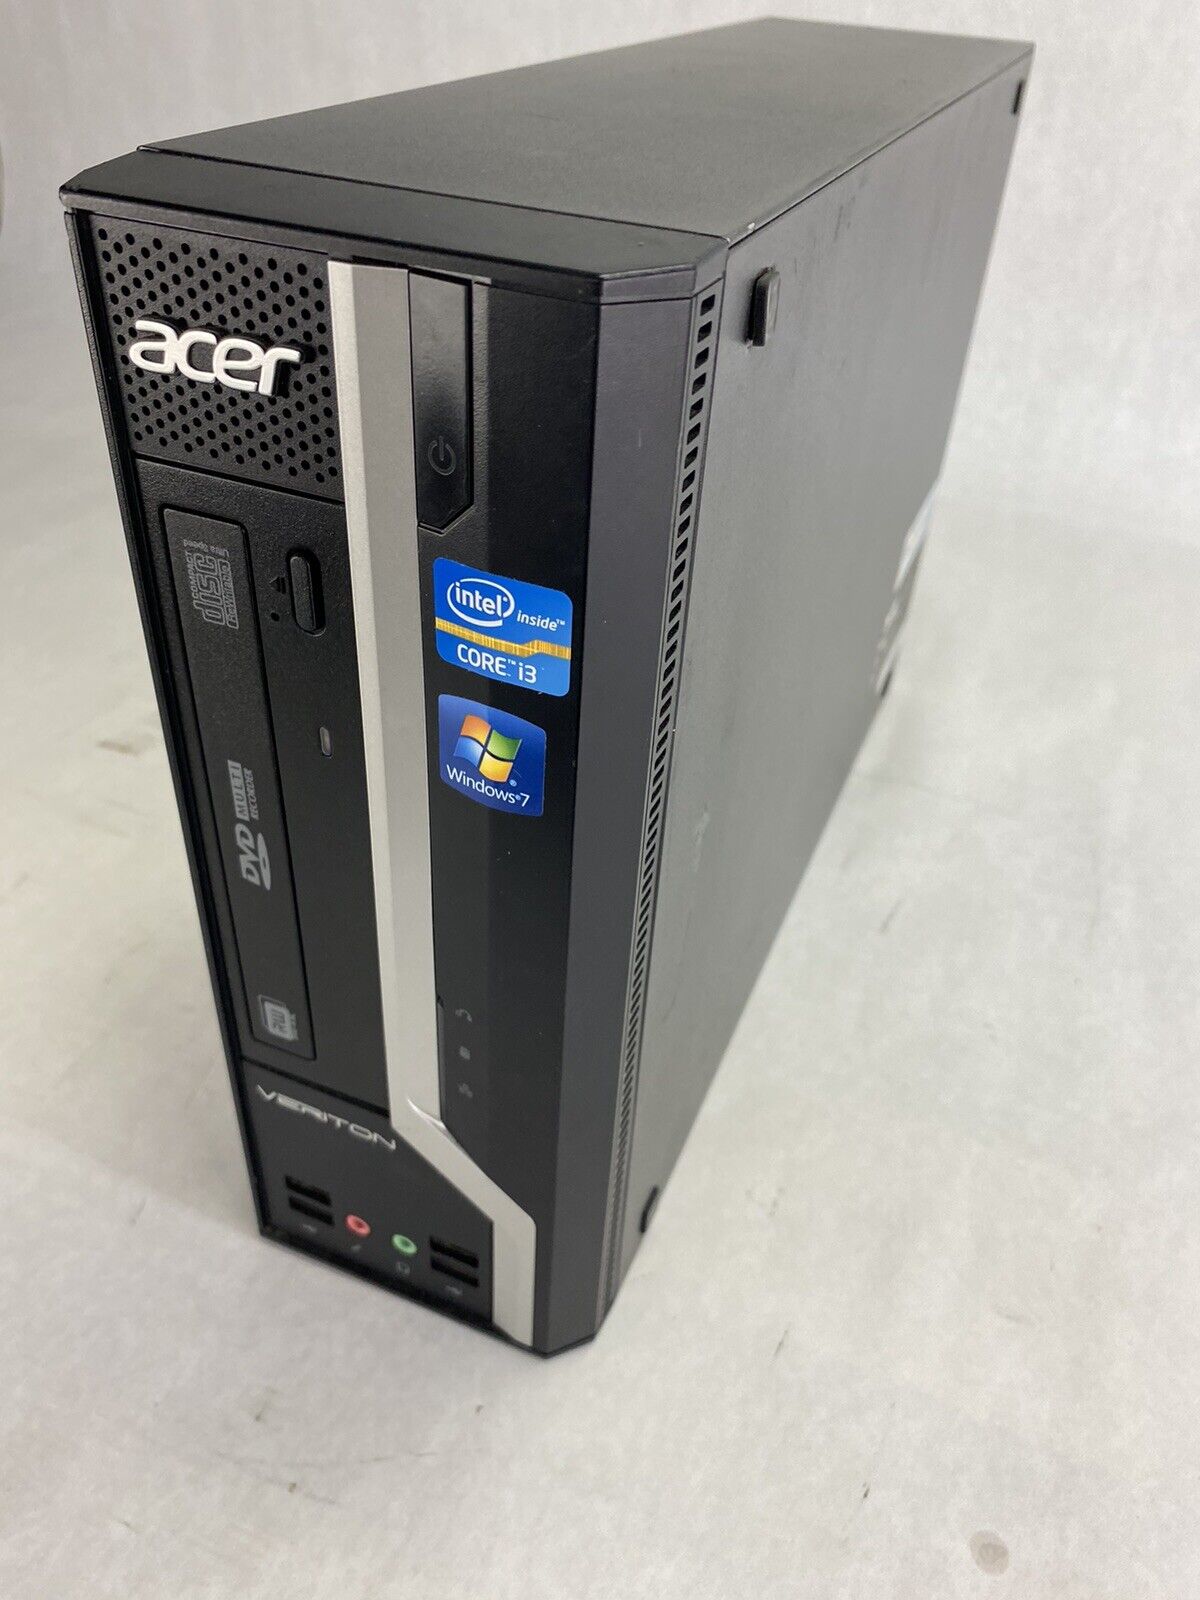 Acer Veriton X4610G Intel Core i3-2120 3.3GHz CPU 2GB RAM NO HDD NO OS